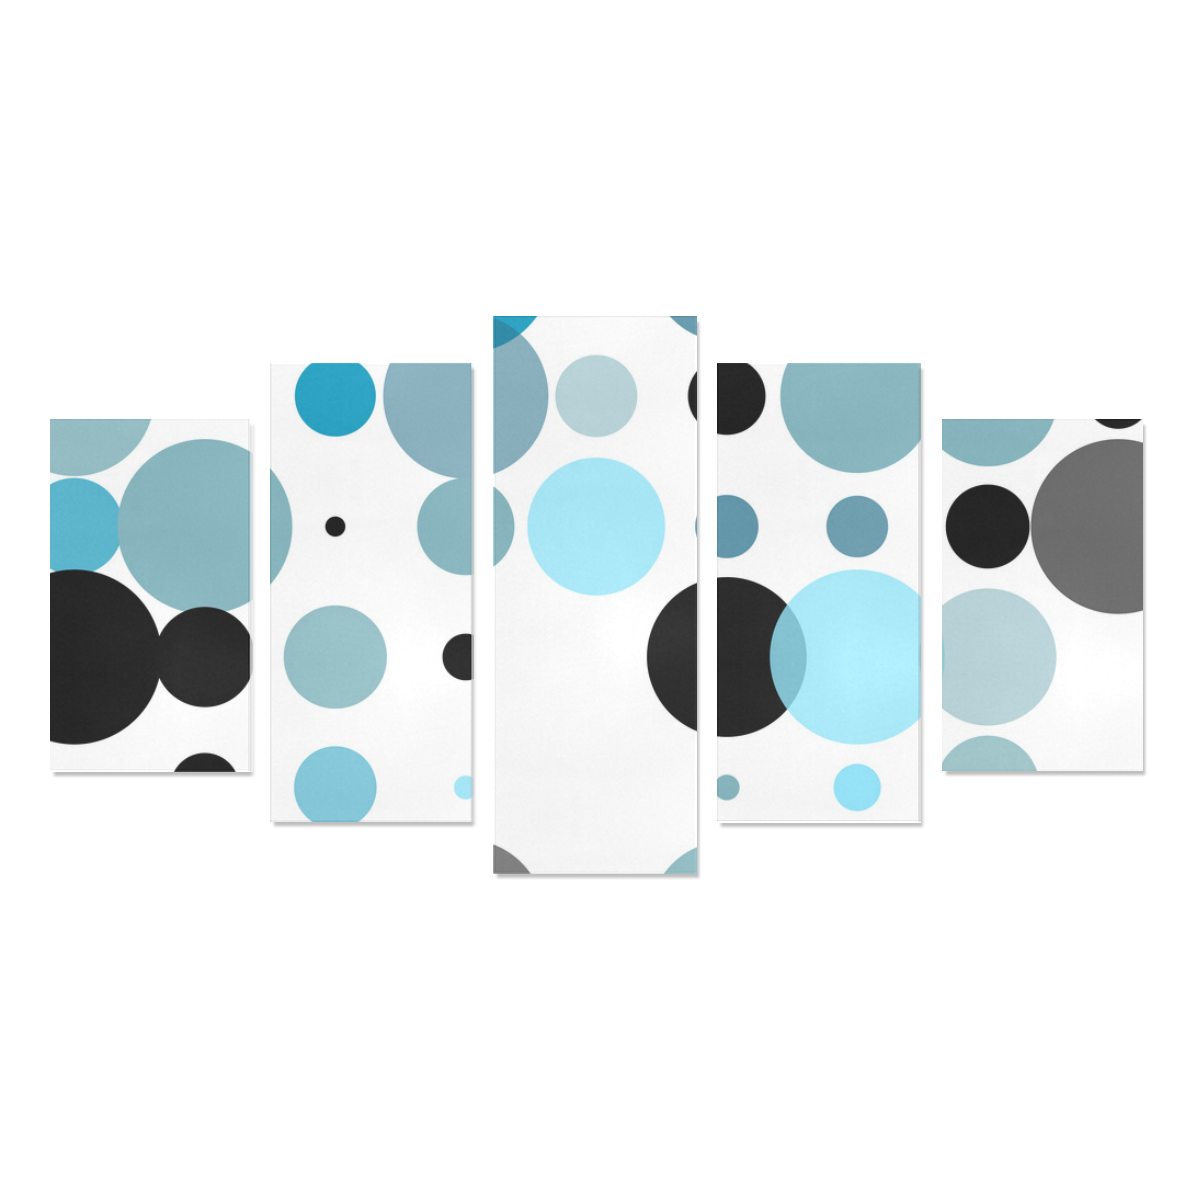 Blue black and gray polka dots Canvas Print Sets A (No Frame)